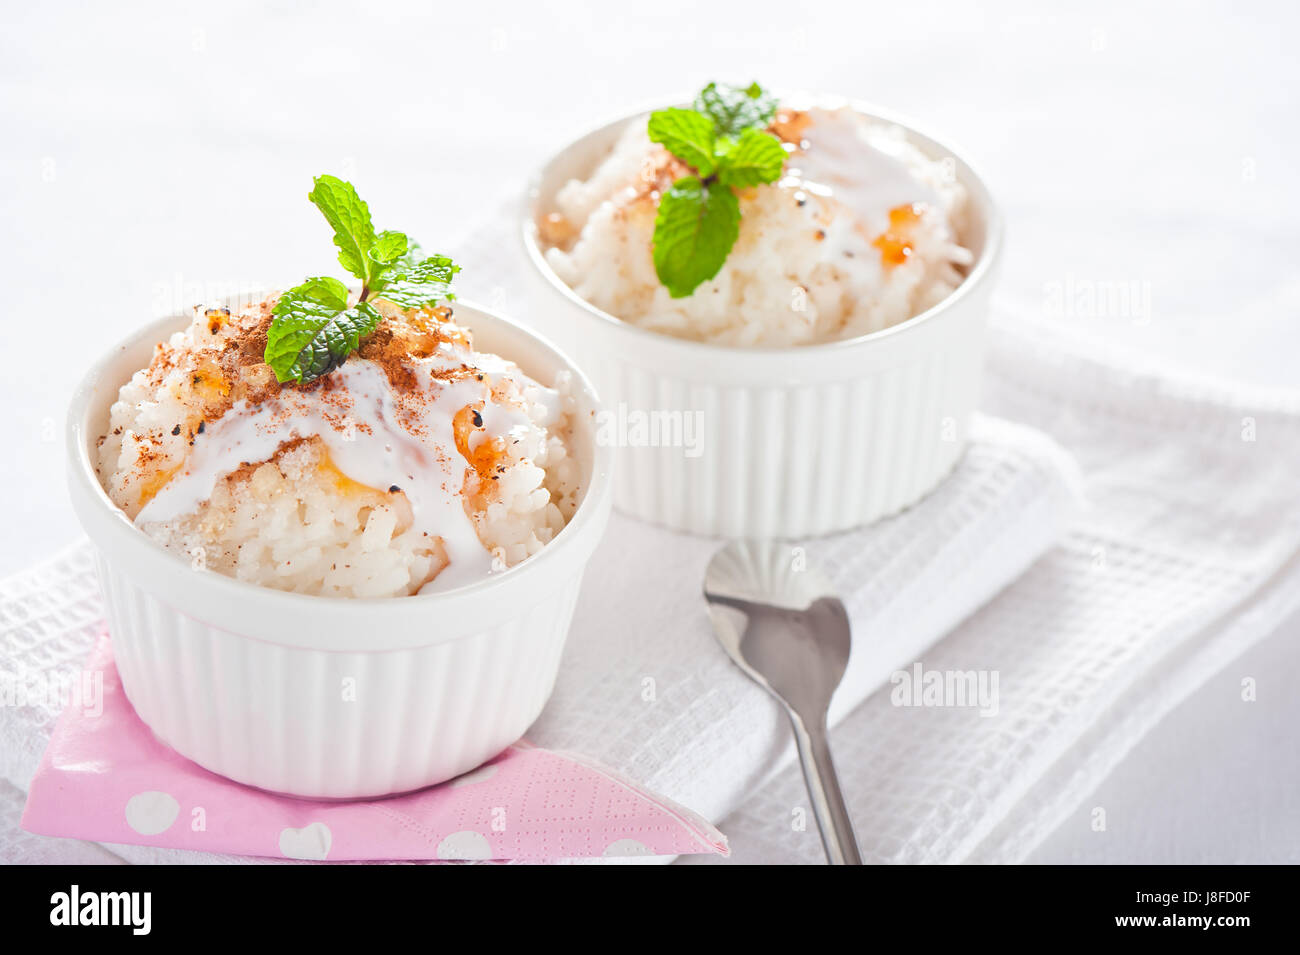 Reispudding Stockfoto und mehr Bilder von Reispudding - Reispudding, Reis -  Grundnahrungsmittel, Milch - iStock